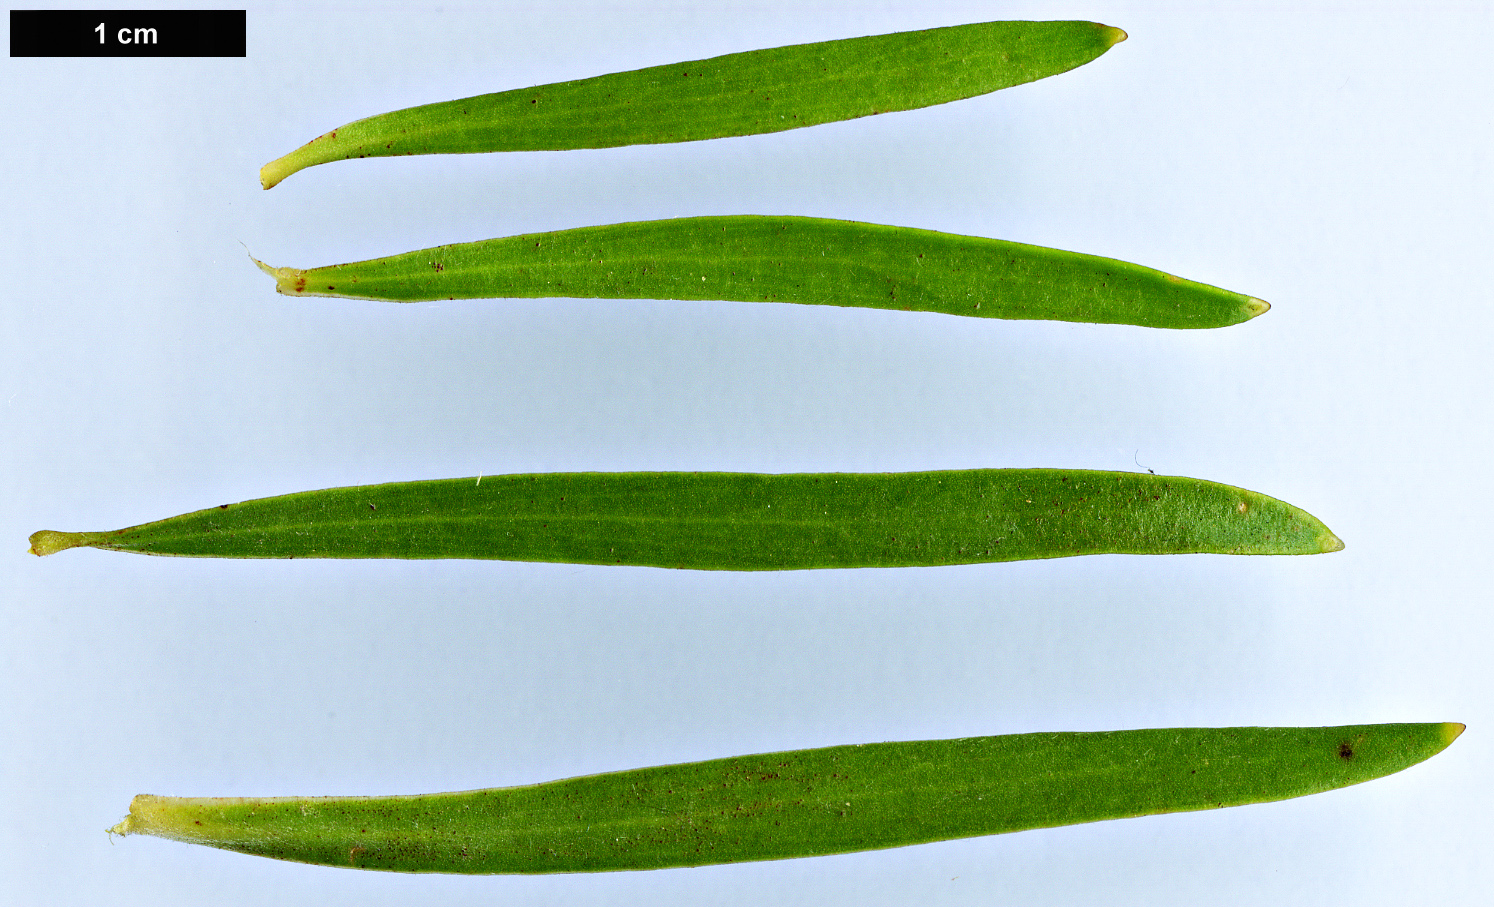 High resolution image: Family: Proteaceae - Genus: Leucadendron - Taxon: spissifolium